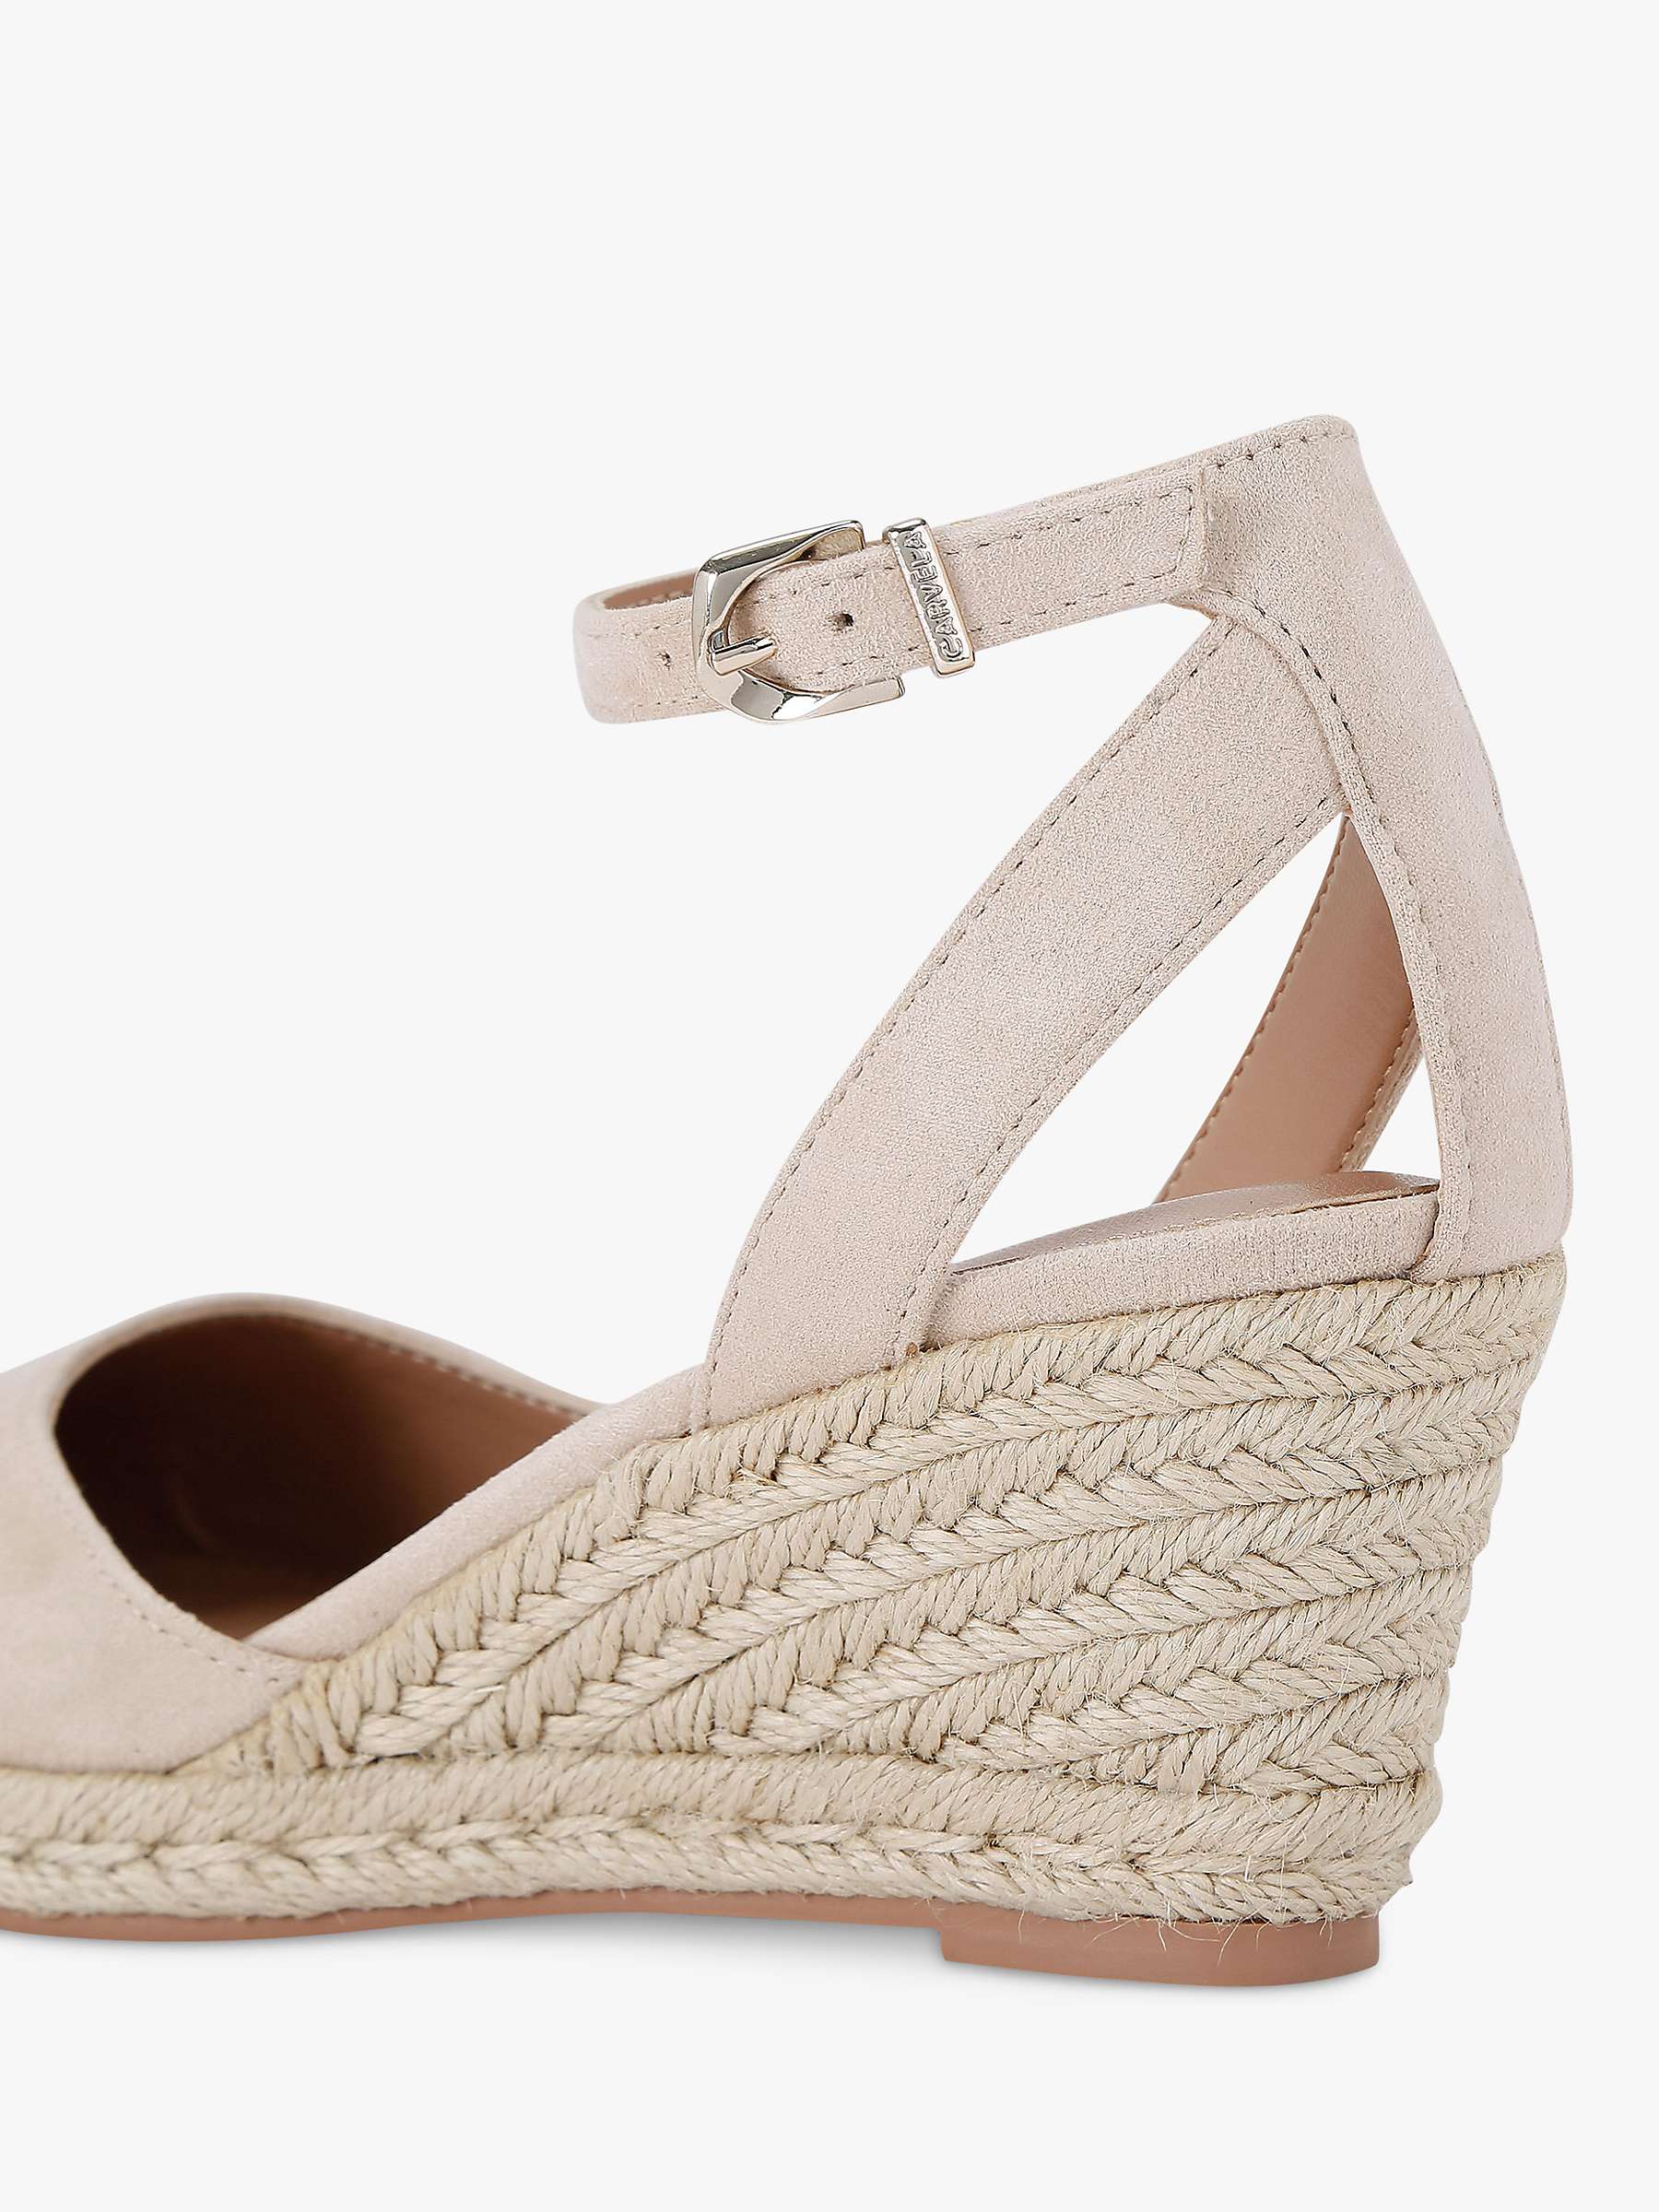 Buy Carvela Sabrina Wedge Heel Espadrille Shoes, Taupe Online at johnlewis.com